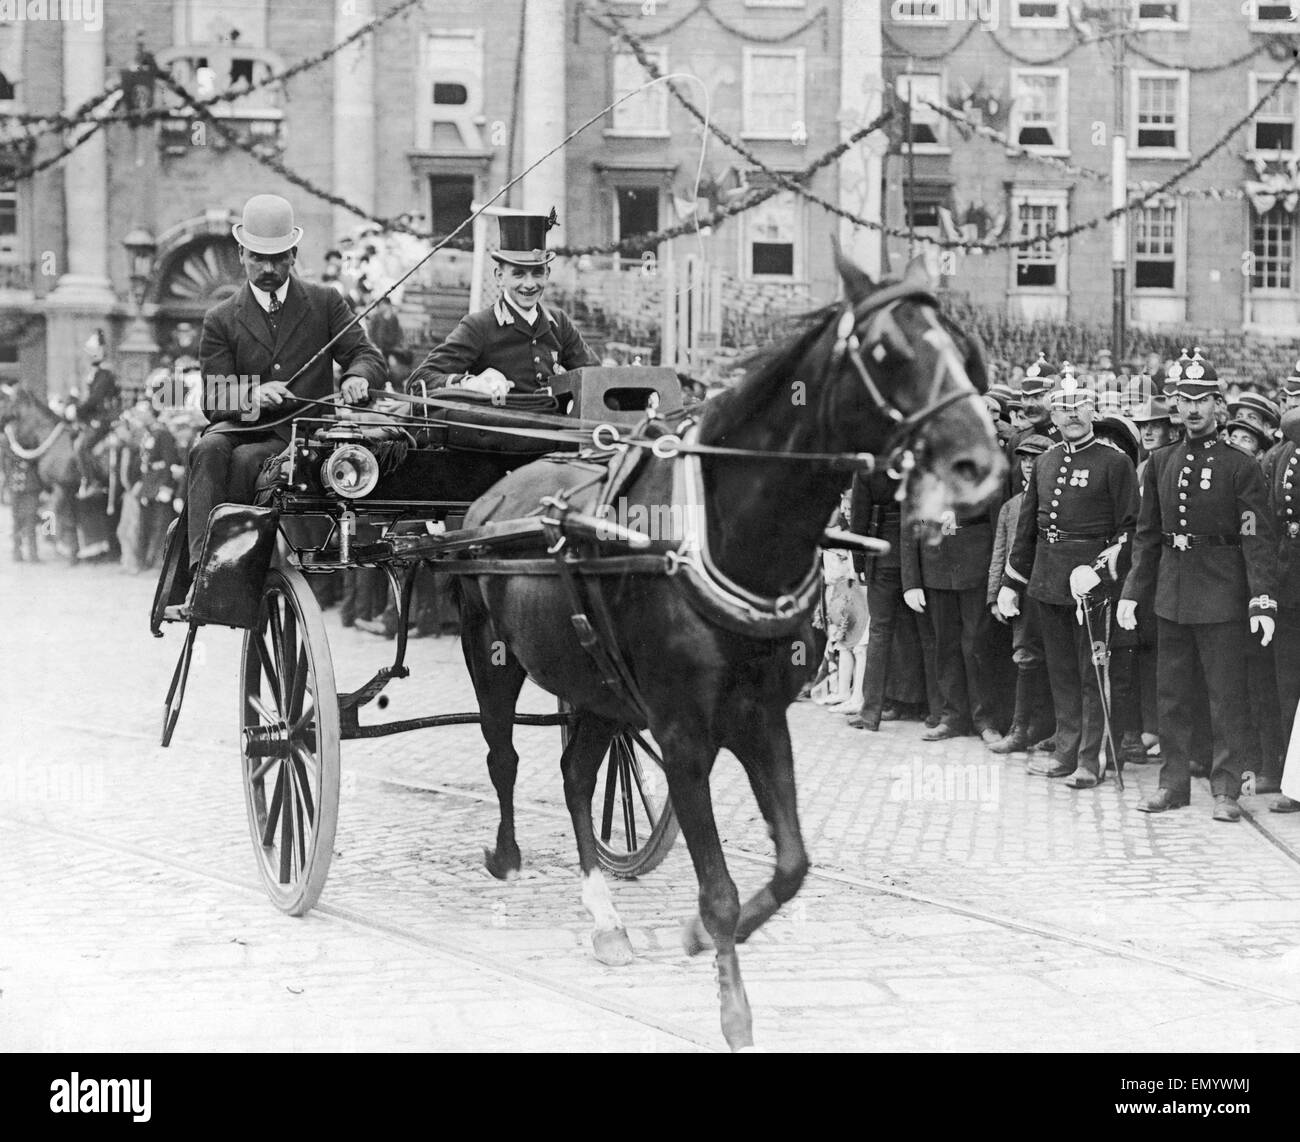 Serviteur Royal vu ici sur une voiture jaunting de Dublin vers juillet 1911 Banque D'Images